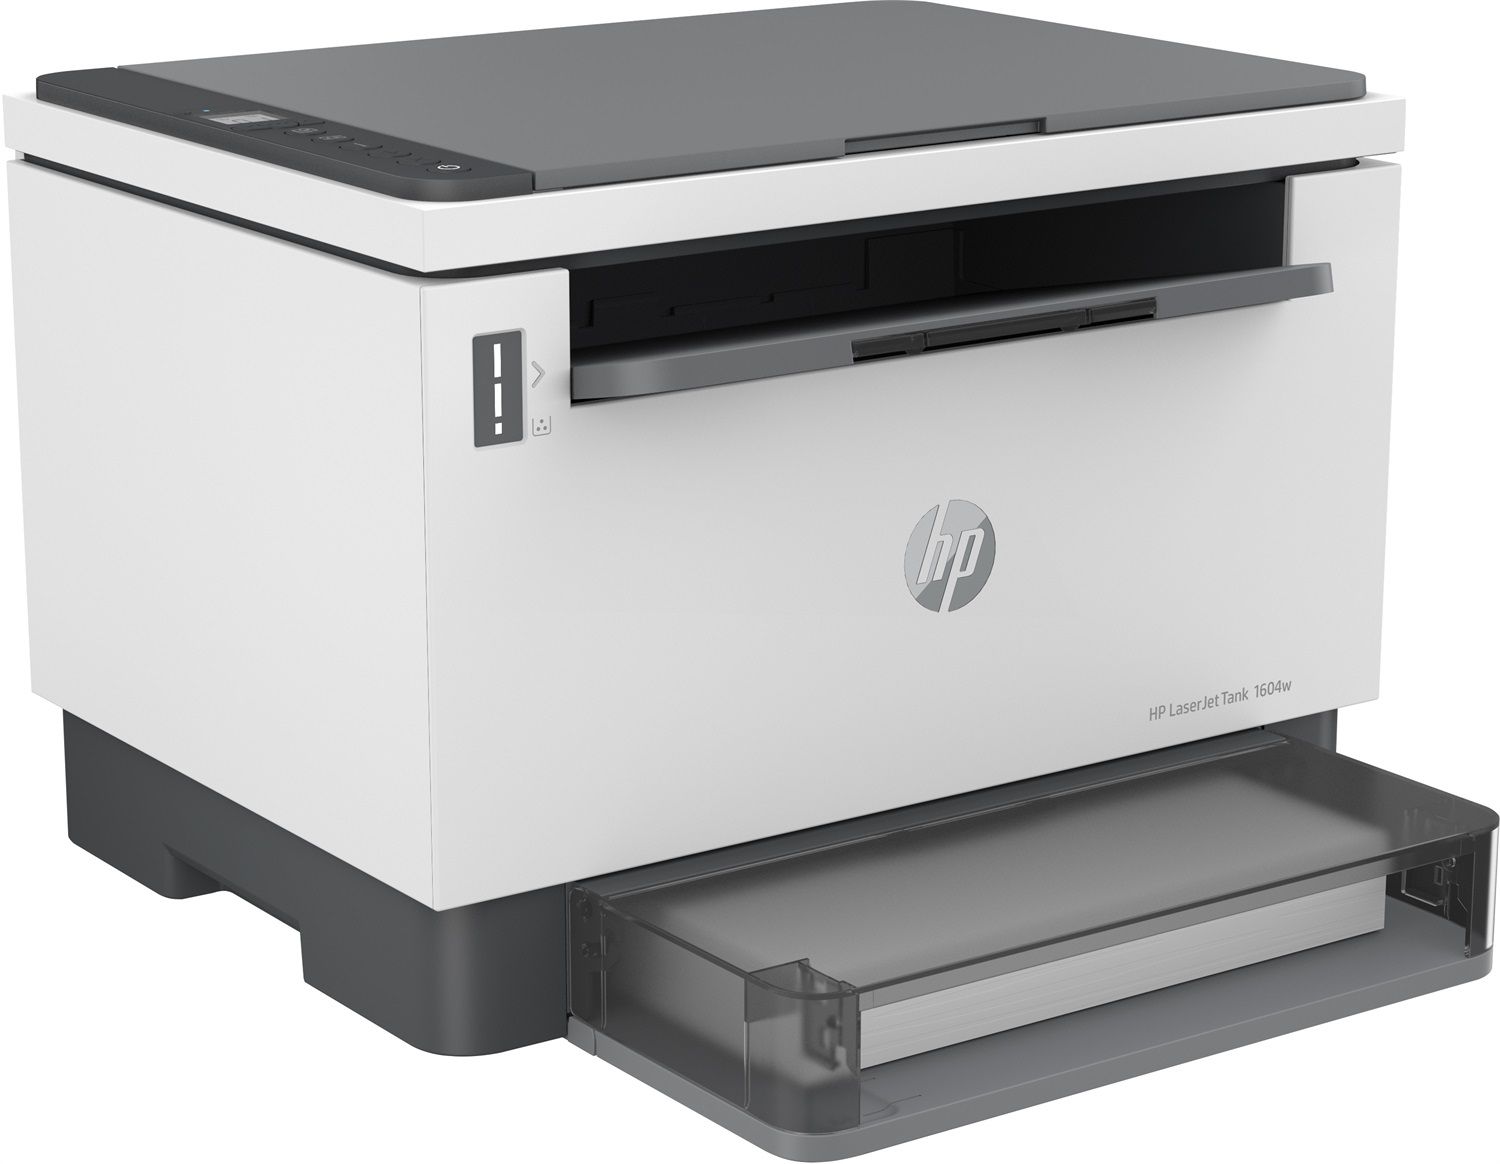 HP LaserJet M110we (Stampante laser, Bianco e nero, Instant Ink, WLAN)  acquisto online in modo economico e sicuro 